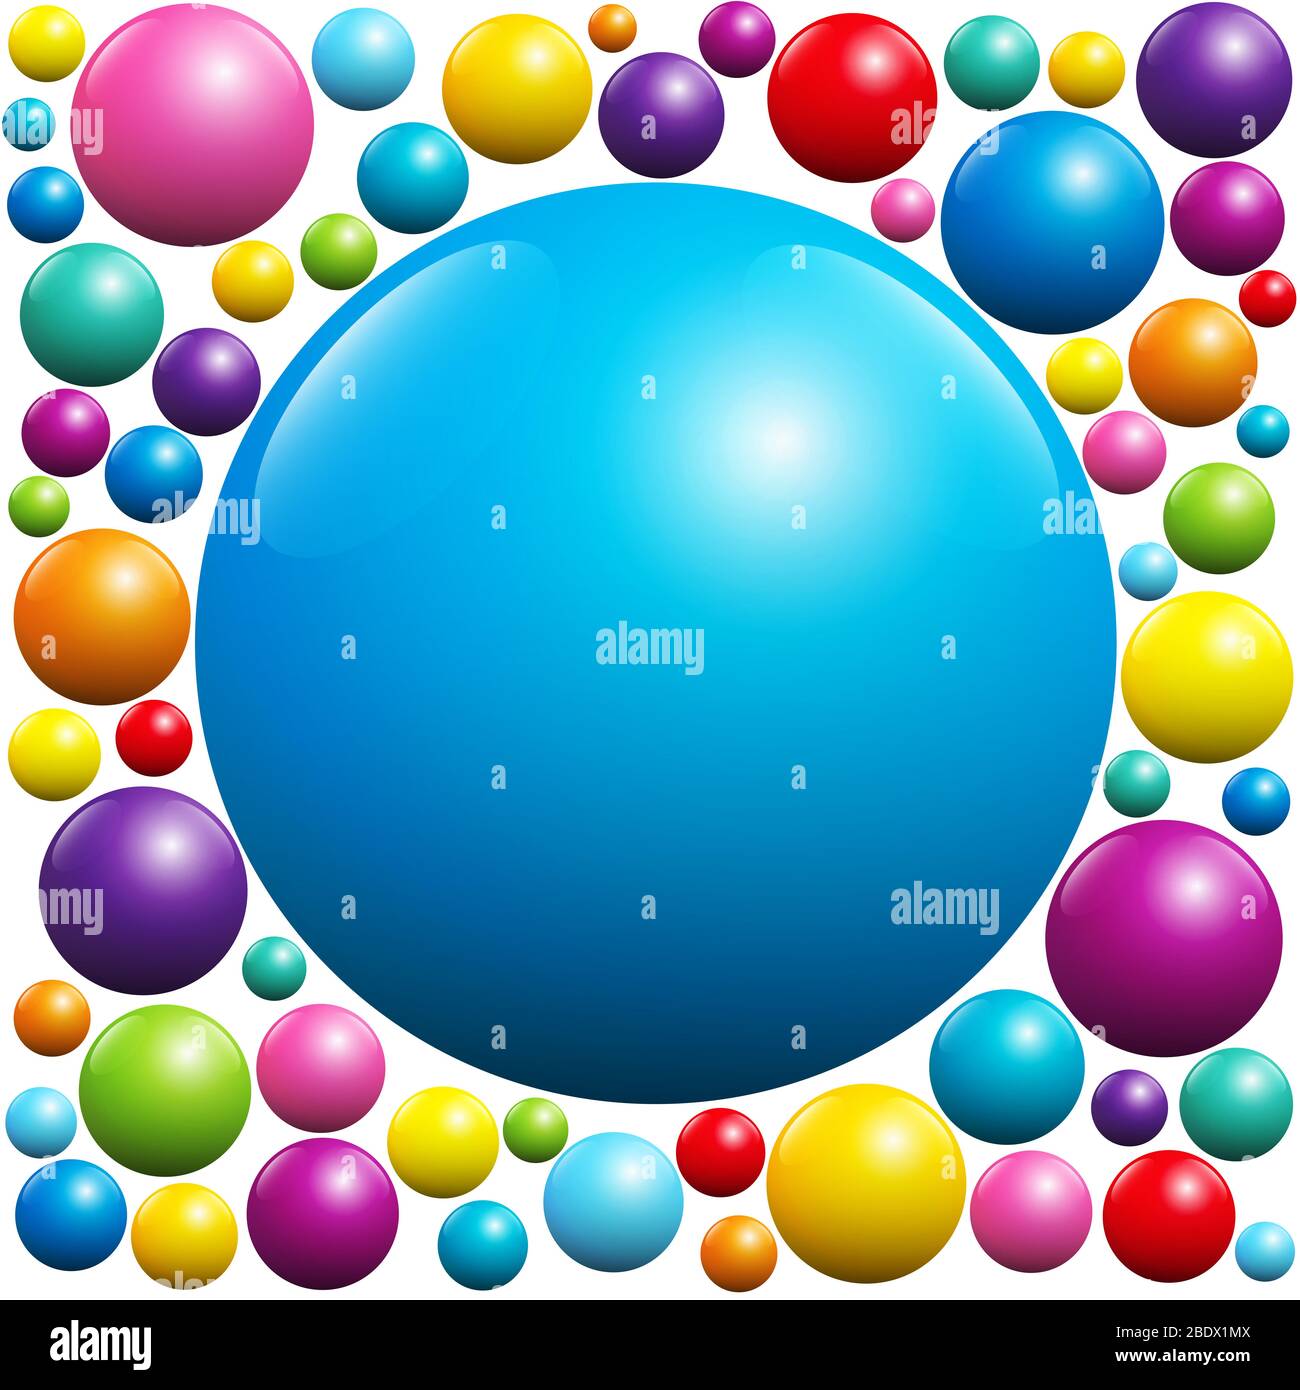 Boule bleue entourée de nombreuses boules colorées - illustration sur fond blanc. Banque D'Images